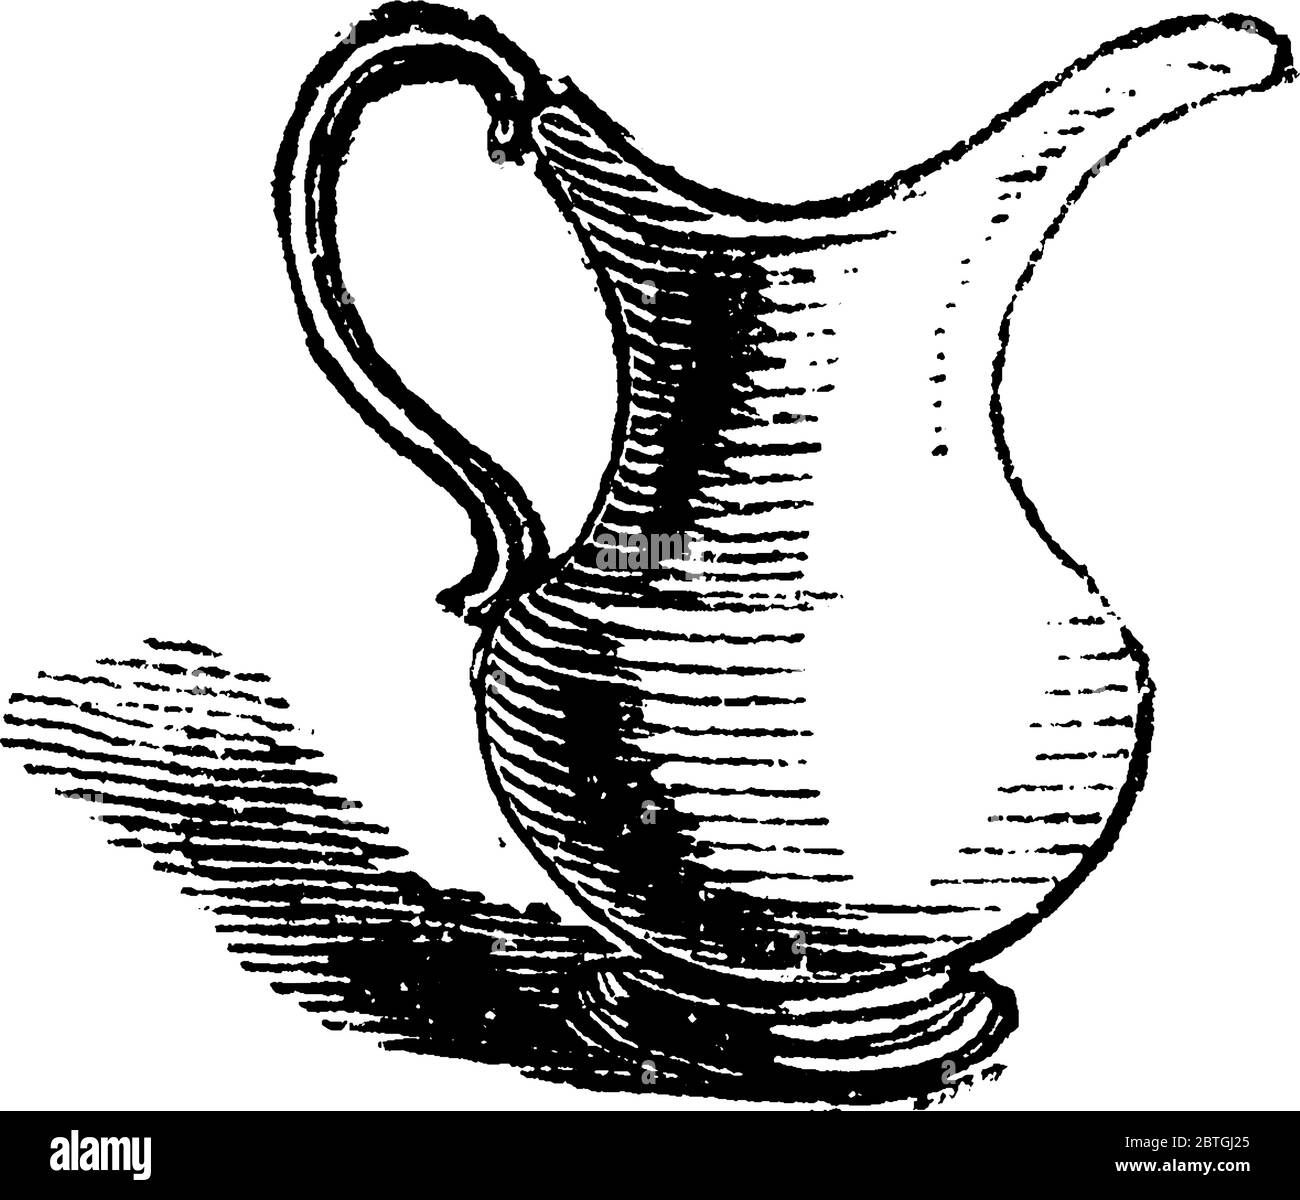 Krug ist ein Behälter mit Griff und Auslauf, zum Speichern und Gießen von Flüssigkeit verwendet., Vintage-Linie Zeichnung oder Gravur Illustration. Stock Vektor